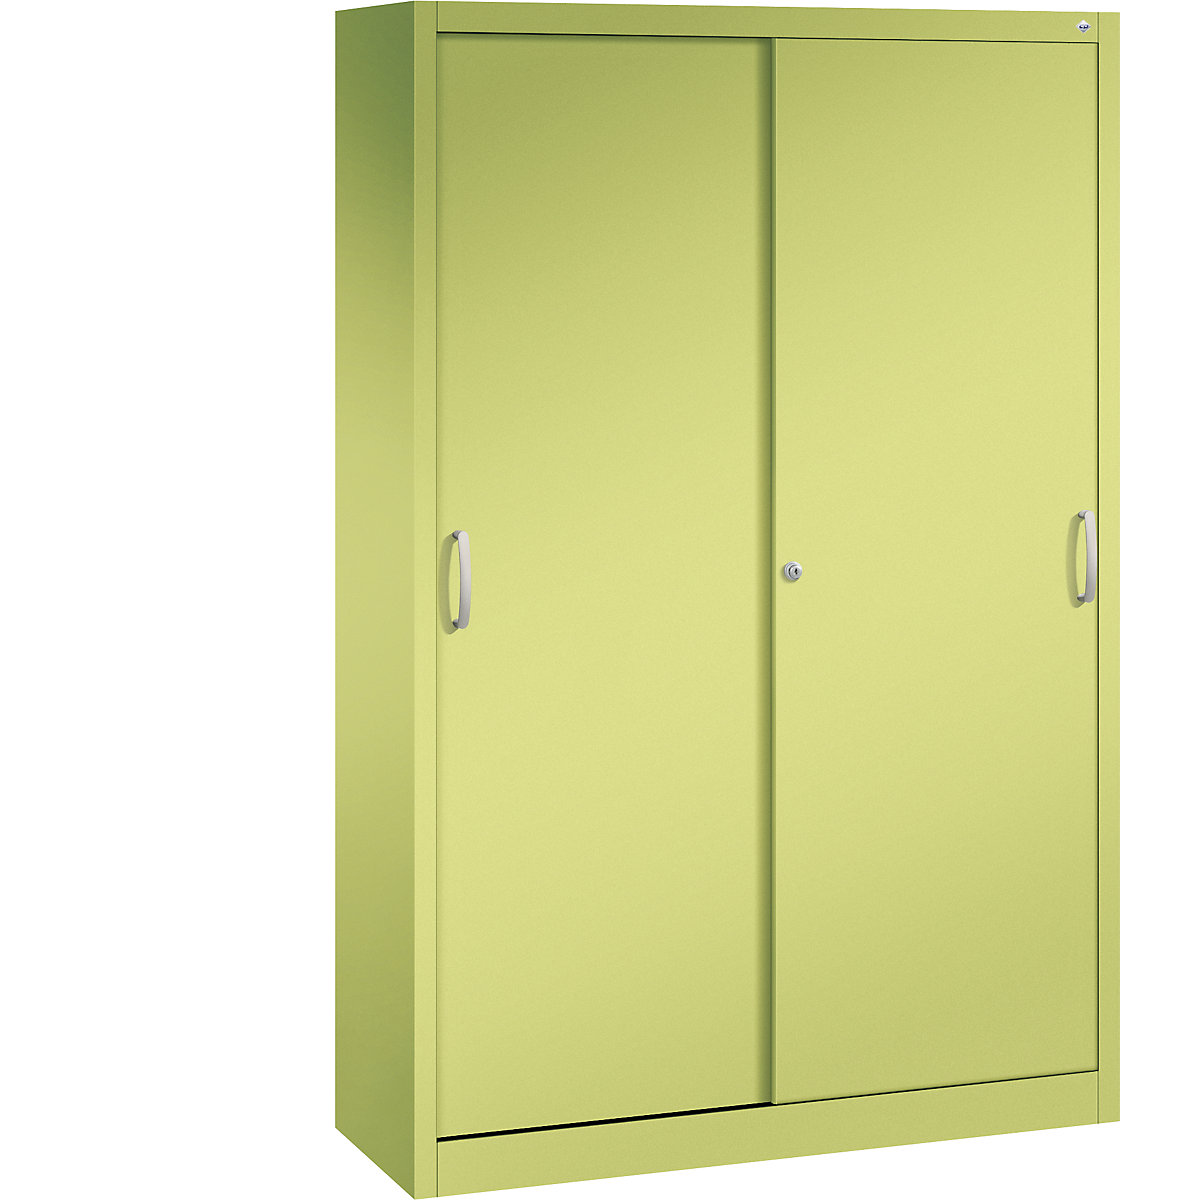 ACURADO sliding door cupboard – C+P, 3 shelves, 2 lockers, HxWxD 1950 x 1200 x 400 mm, viridian green-20